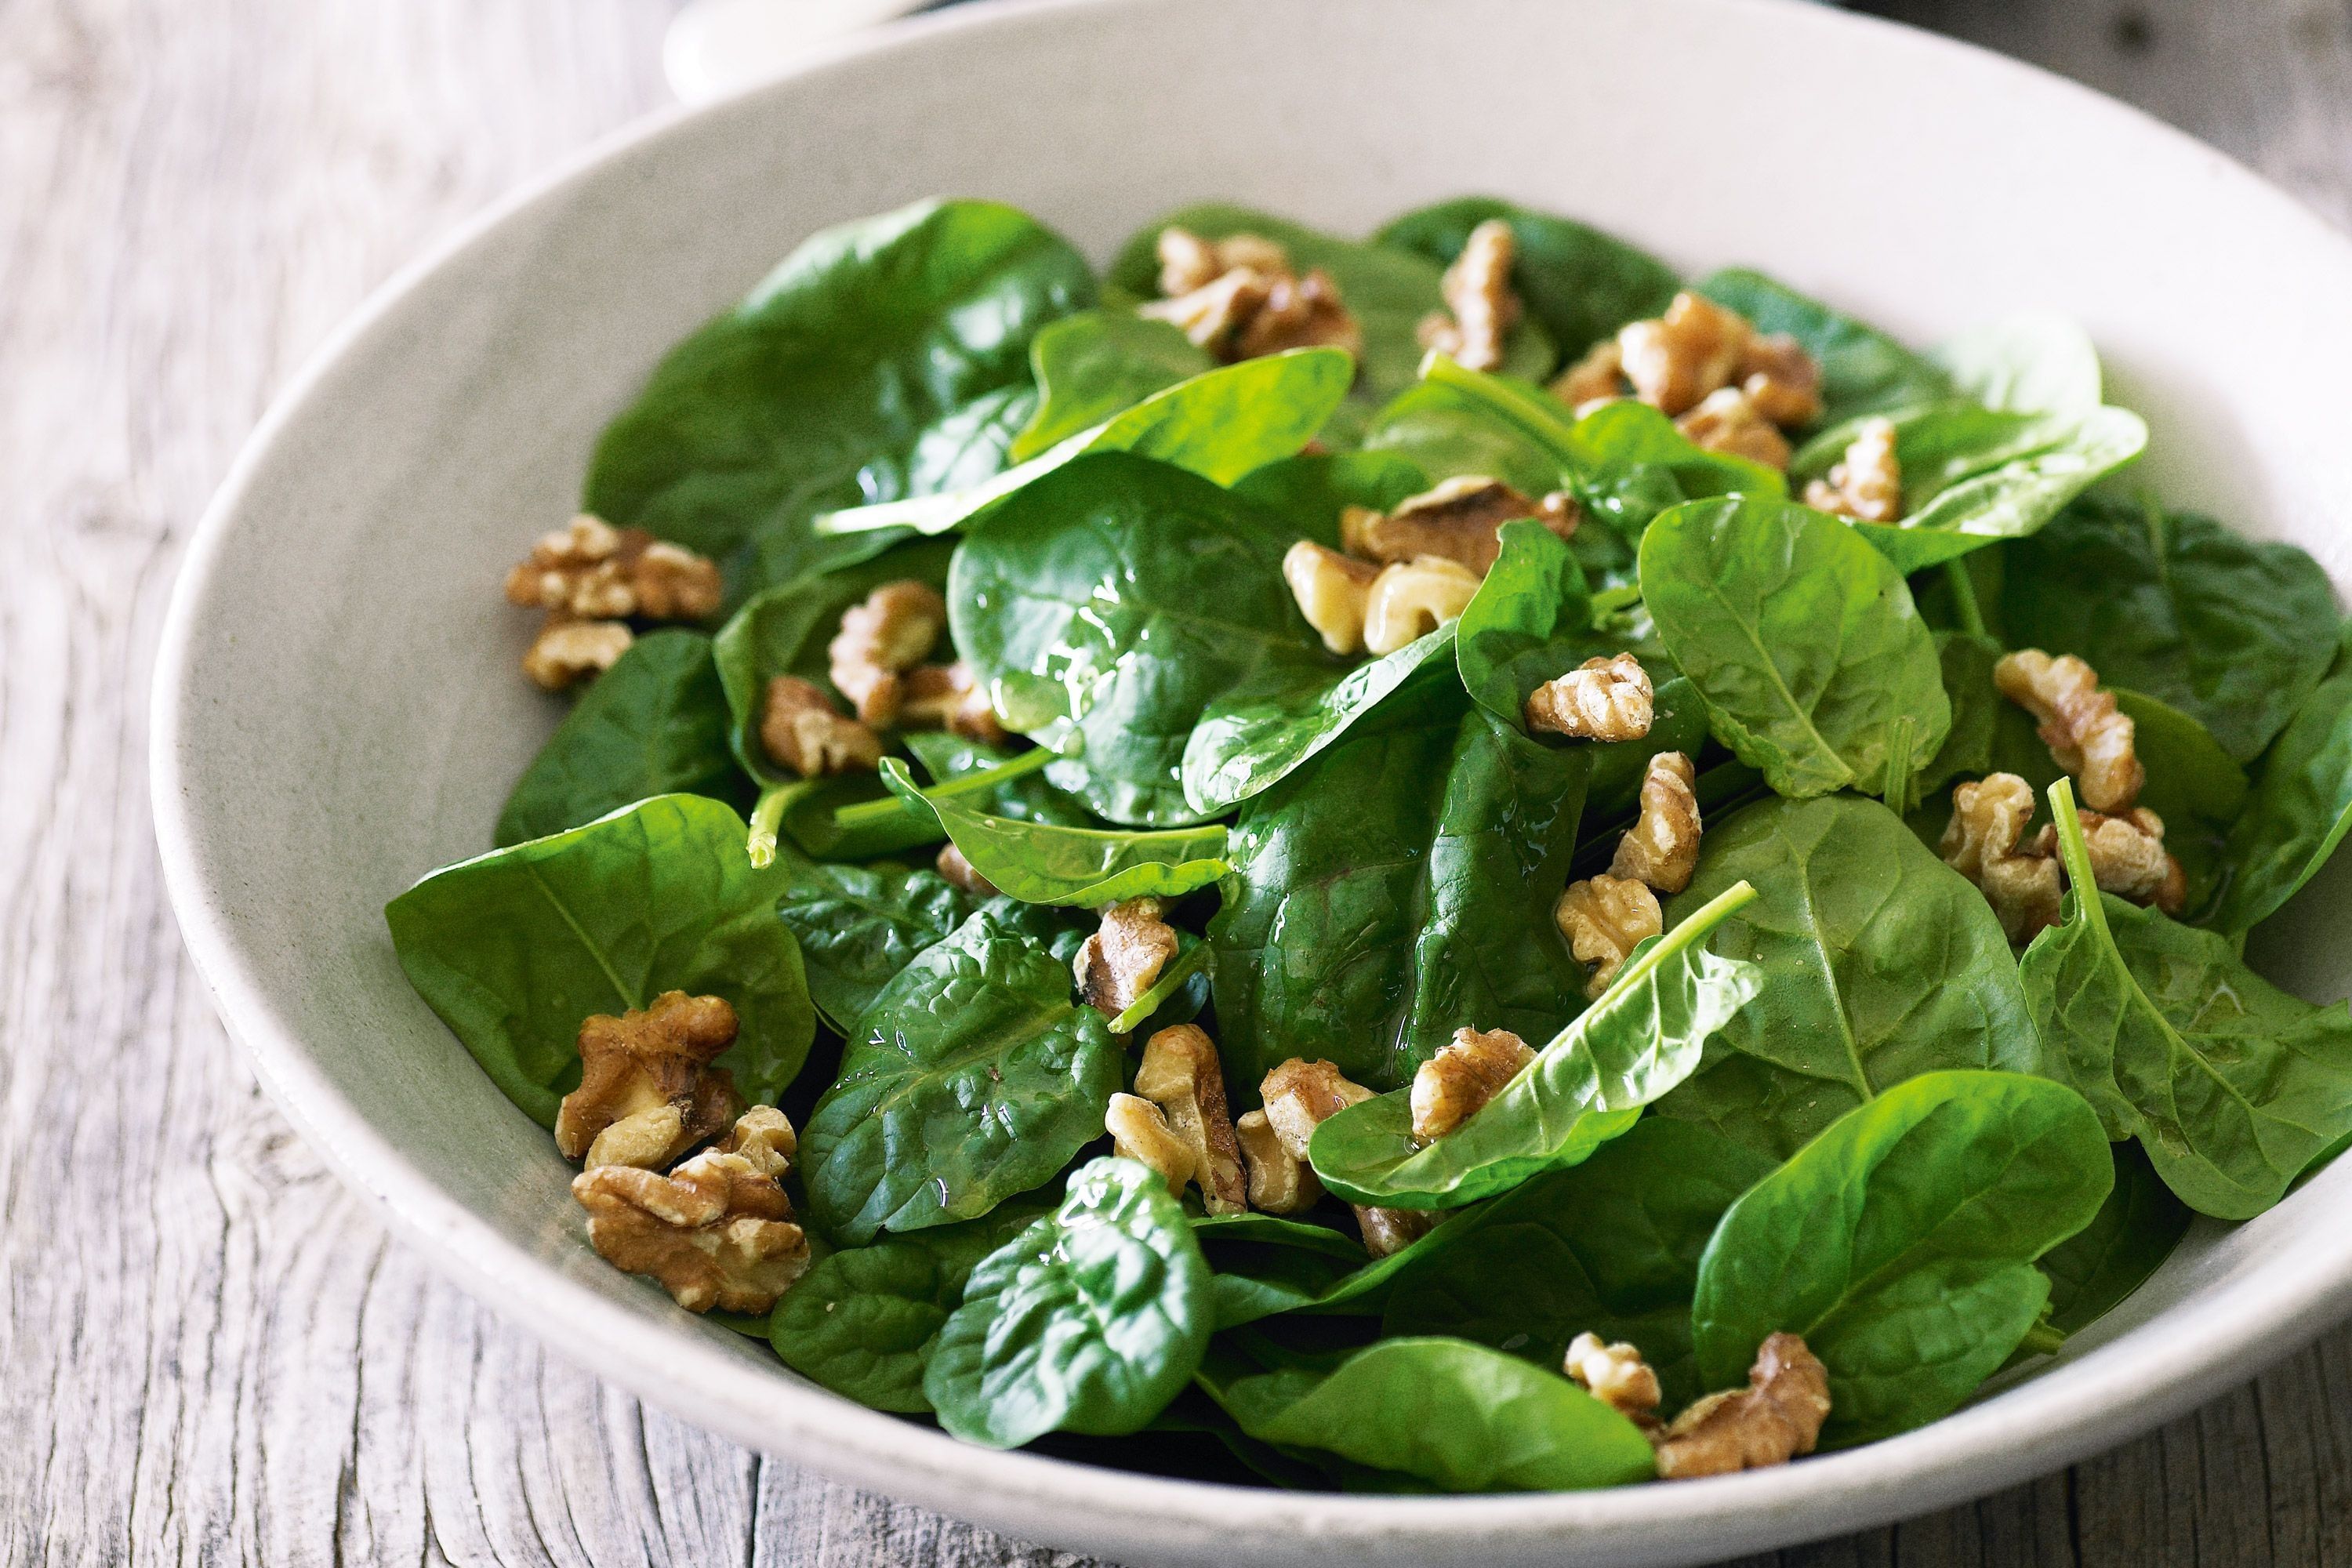 spinach-walnut-salad-46370-1-f6f445a268d6410172135001f834b96c.jpeg